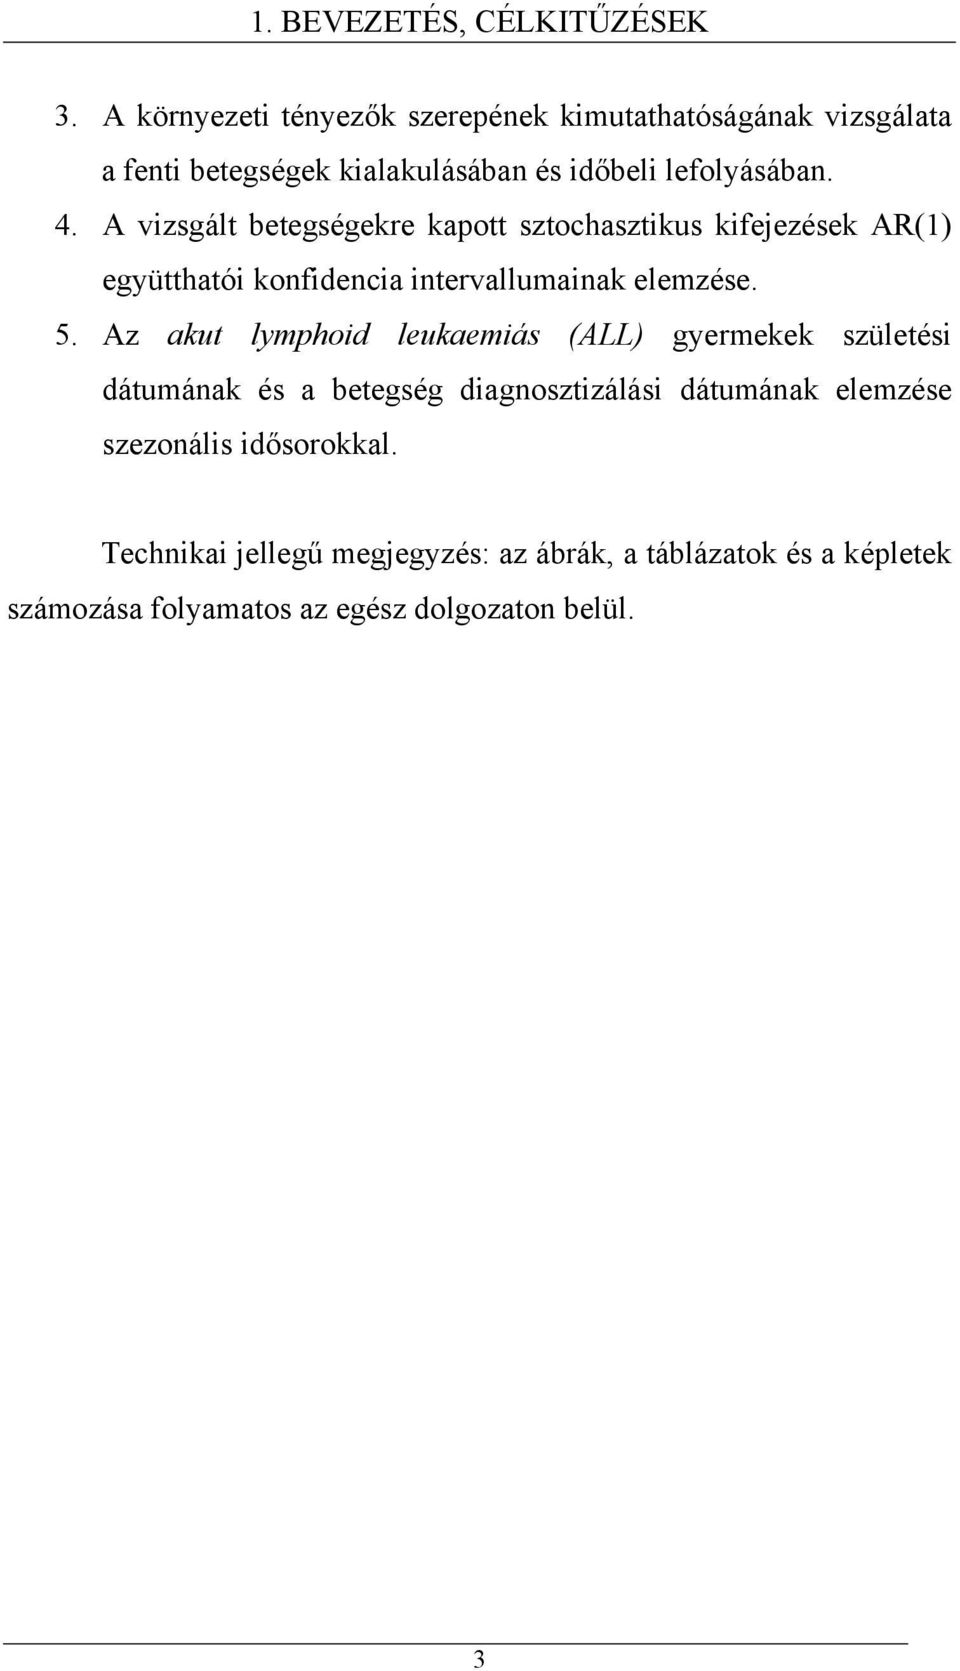 A vizsgál beegségekre kapo szochaszikus kifejezések AR() együhaói konfidencia inervallumainak elemzése. 5.